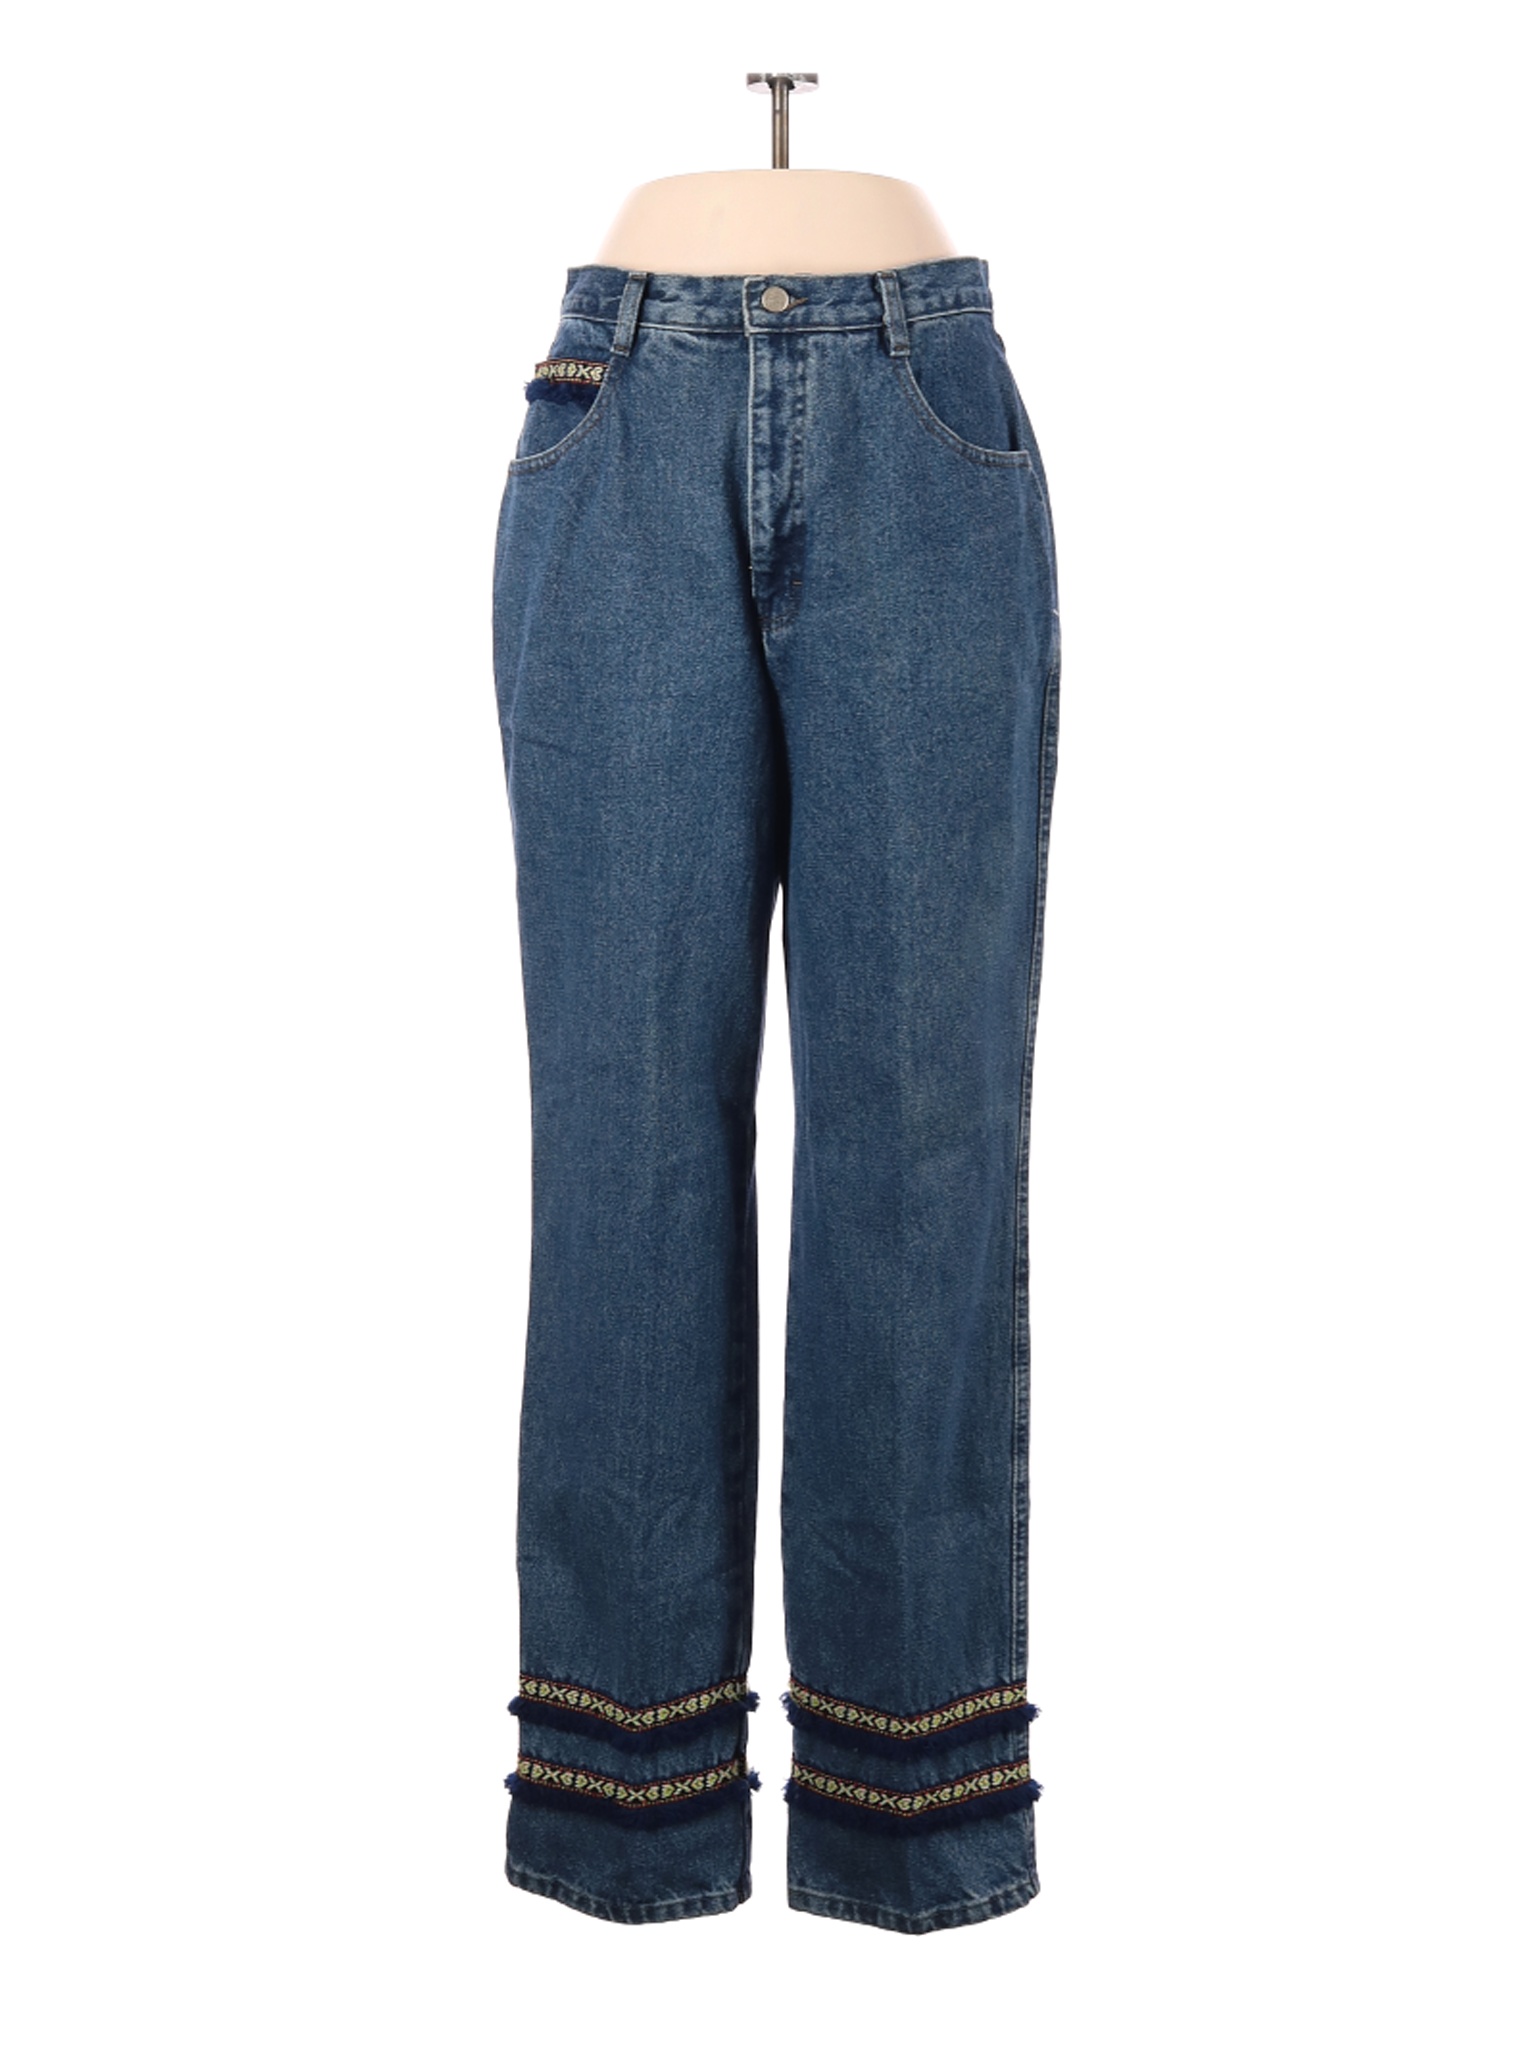 Roper Women Blue Jeans 15 | eBay